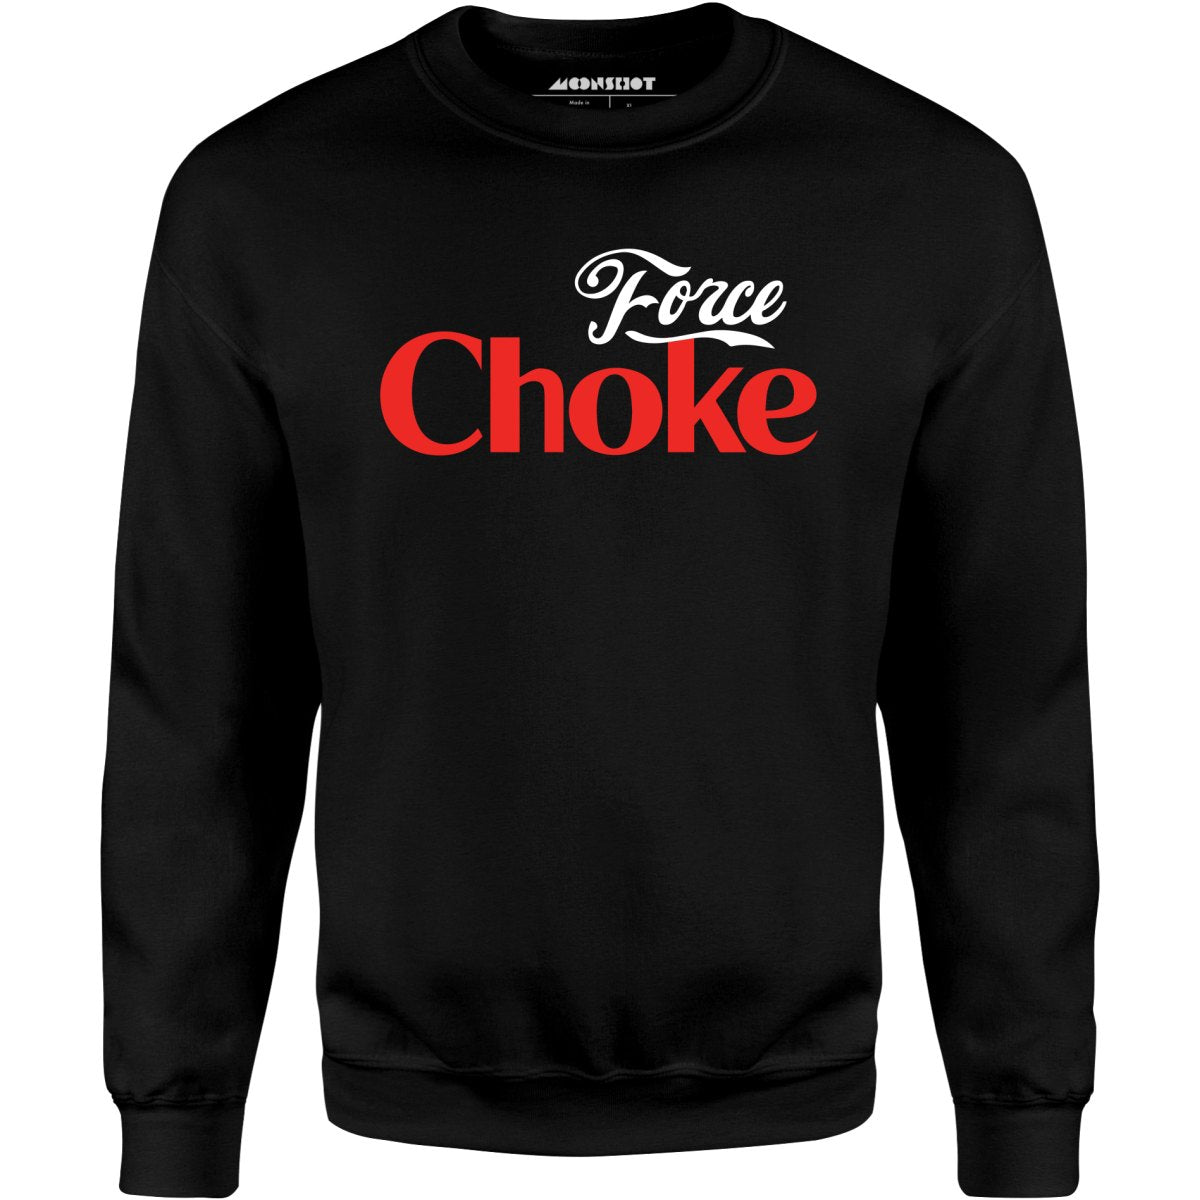 Force Choke - Unisex Sweatshirt